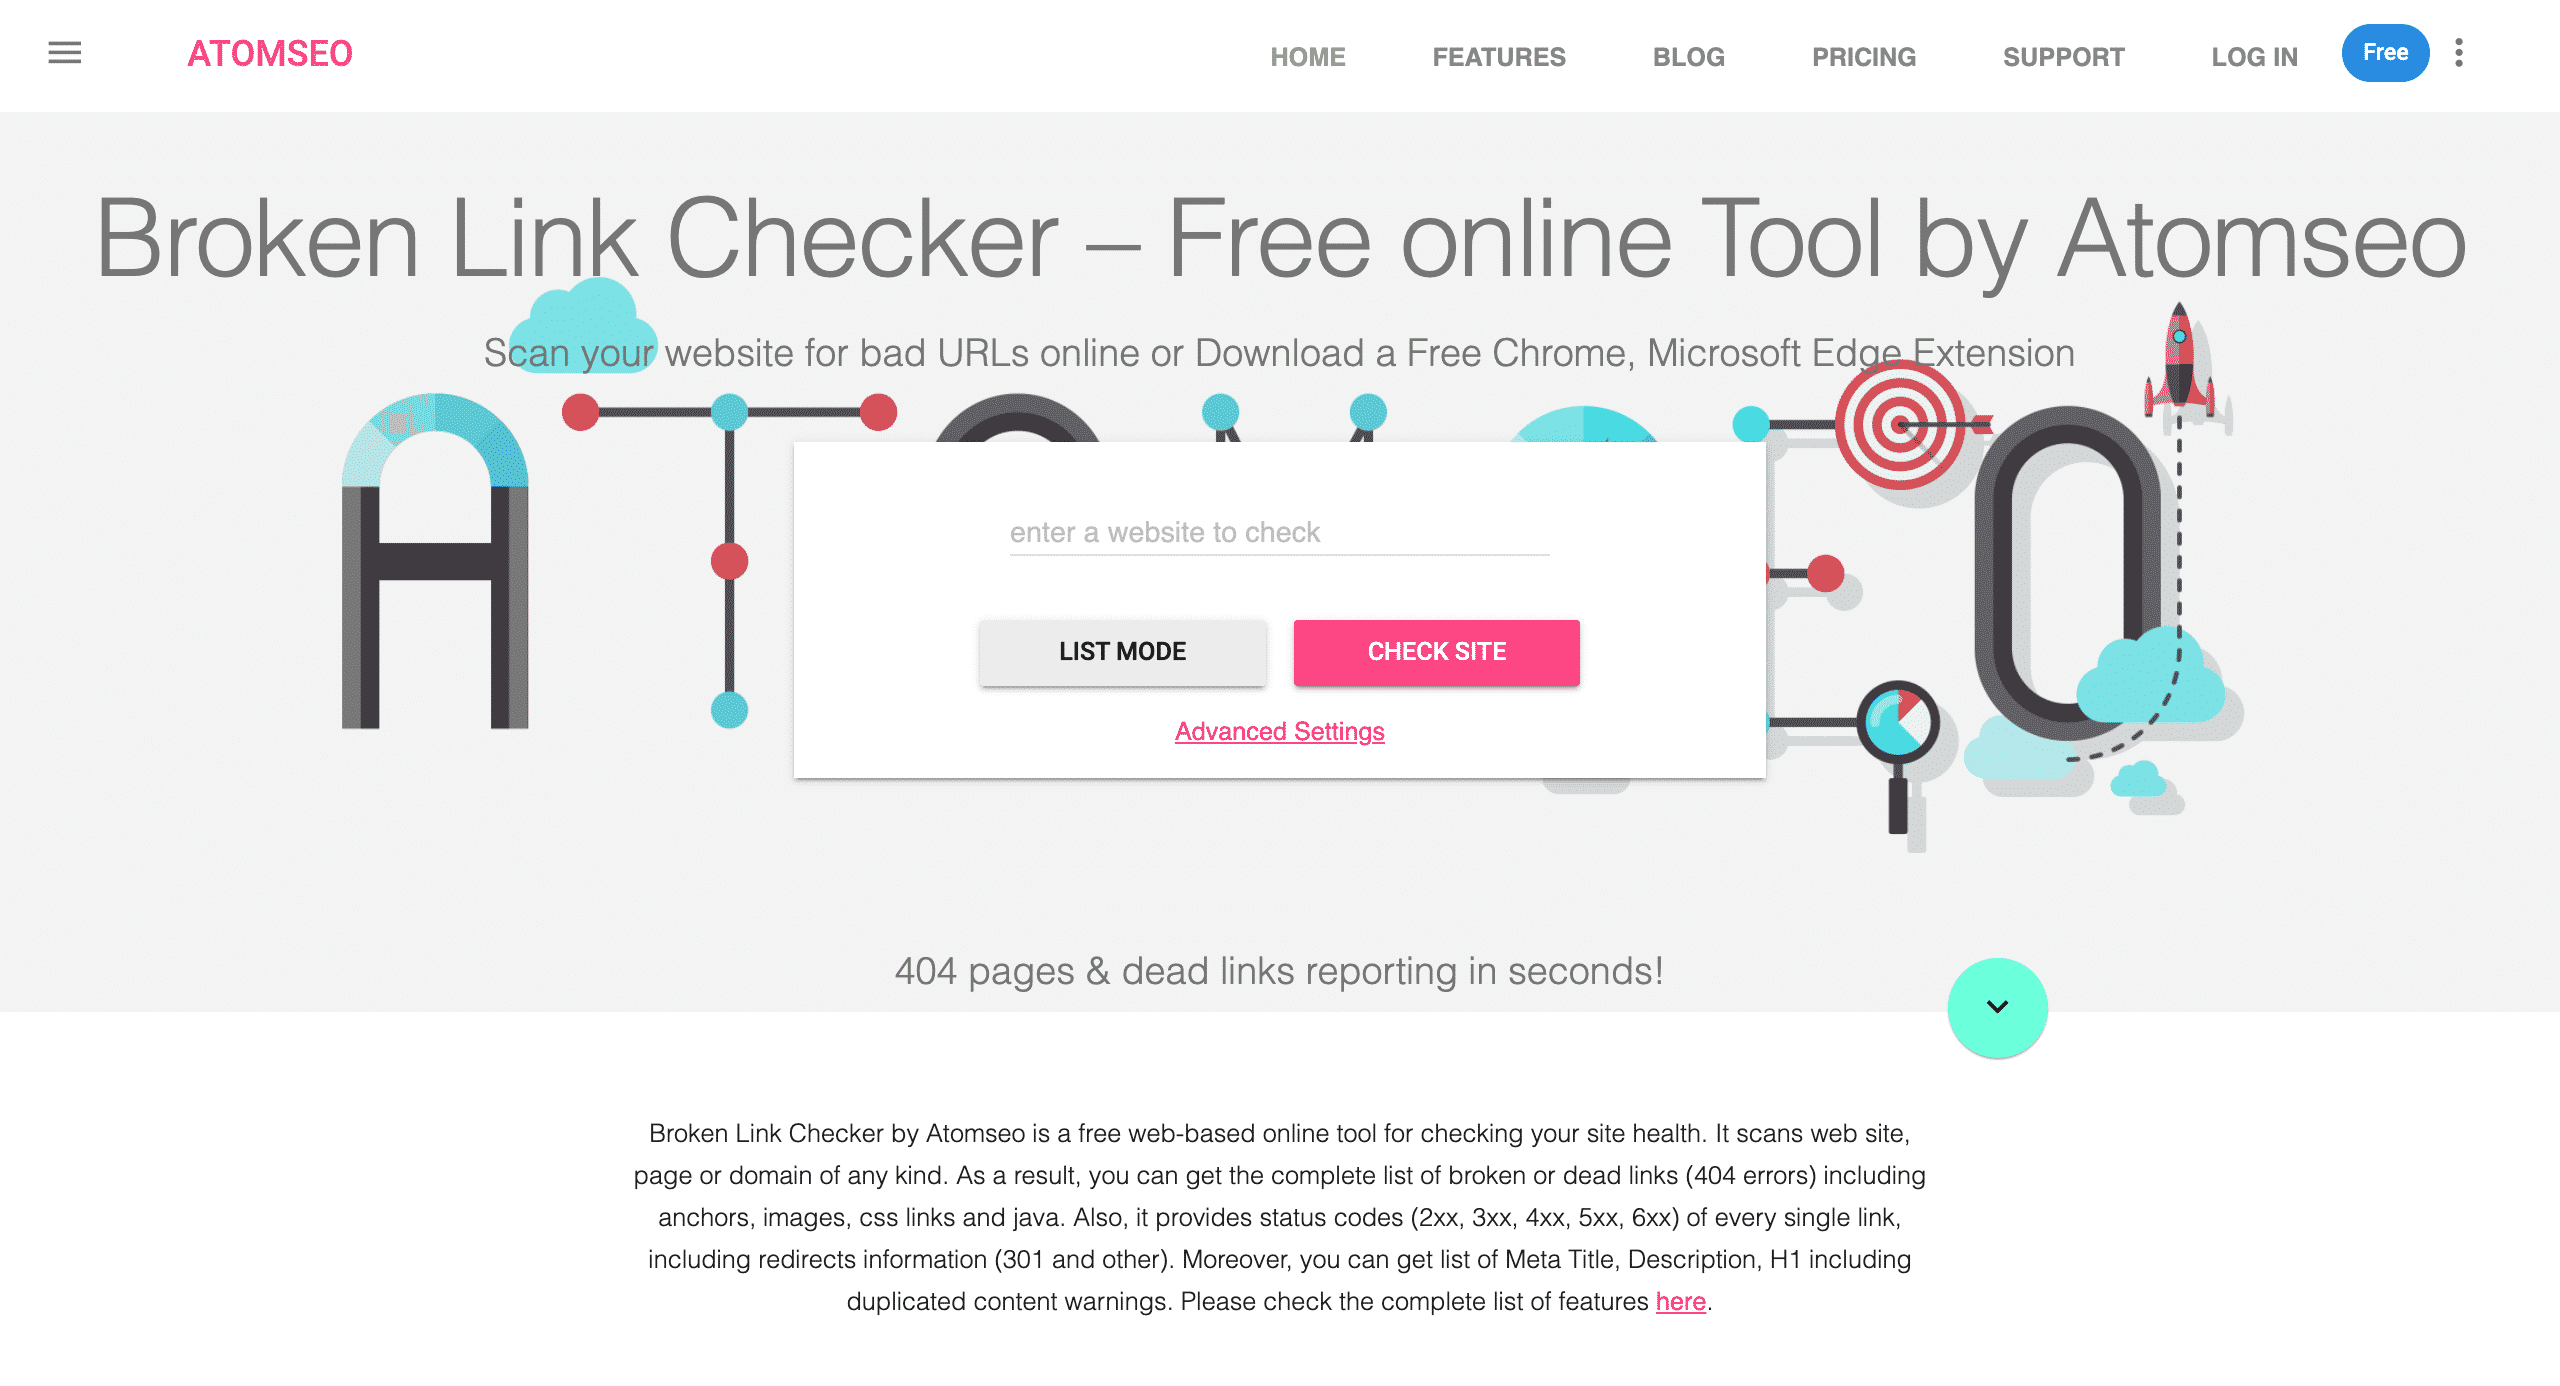 Atomseo broken link checker website conor bradley digital agency